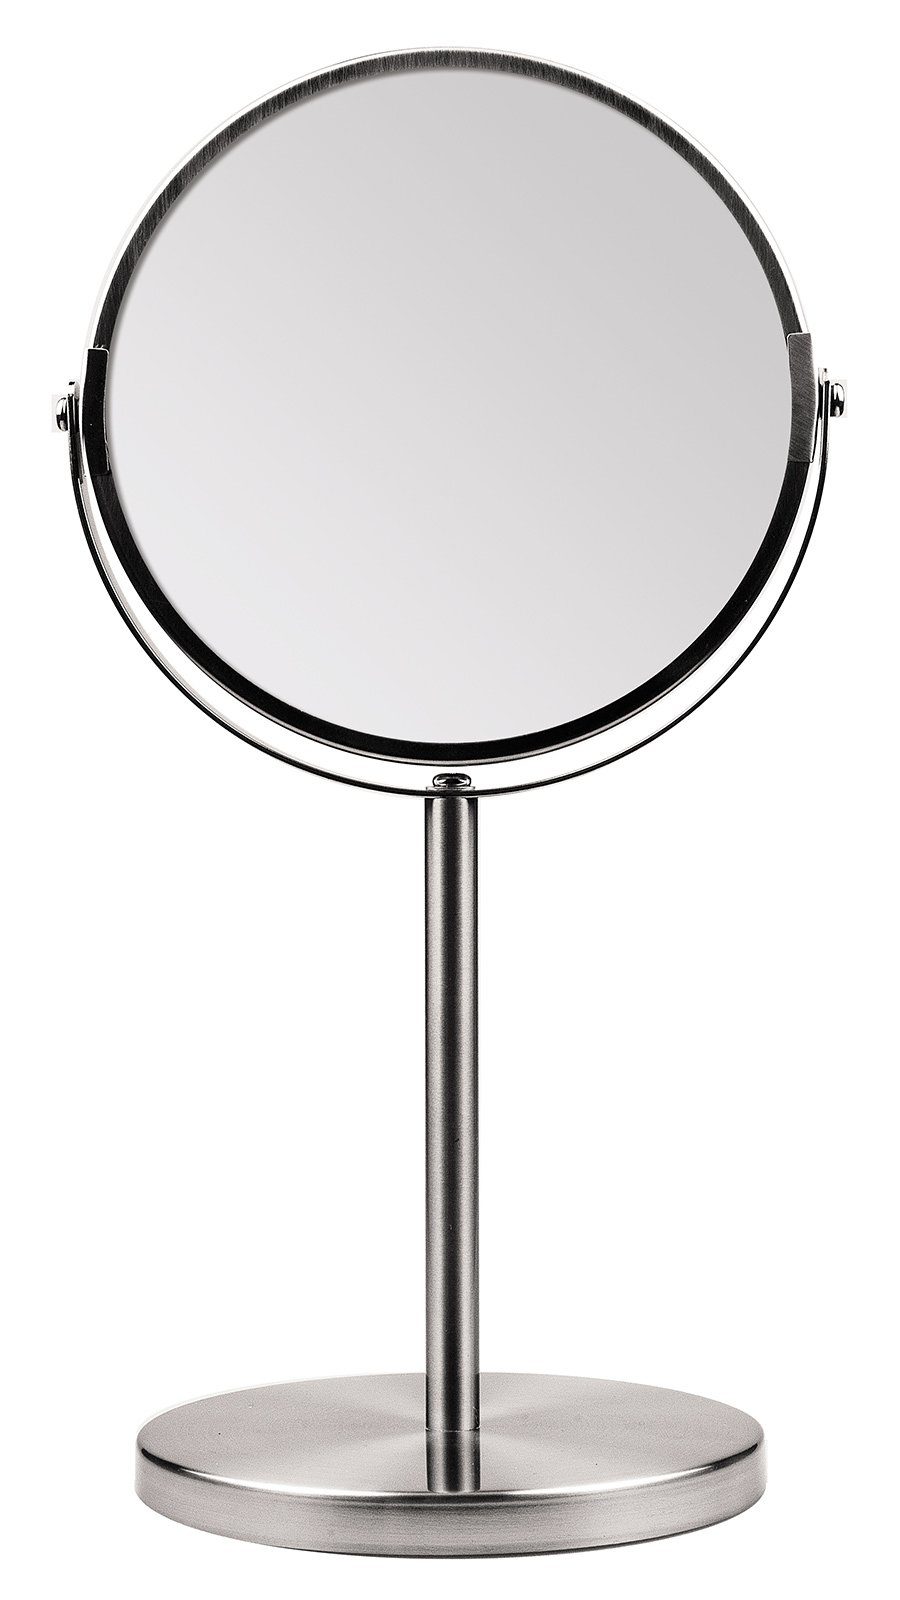 Koskaderm Spiegel 2-fach 34cm Ø mit Vergrößerung, Spiegelflächen, 2 Kosmetex Stand-Spiegel Kosmetik-Spieg Metall 16cm